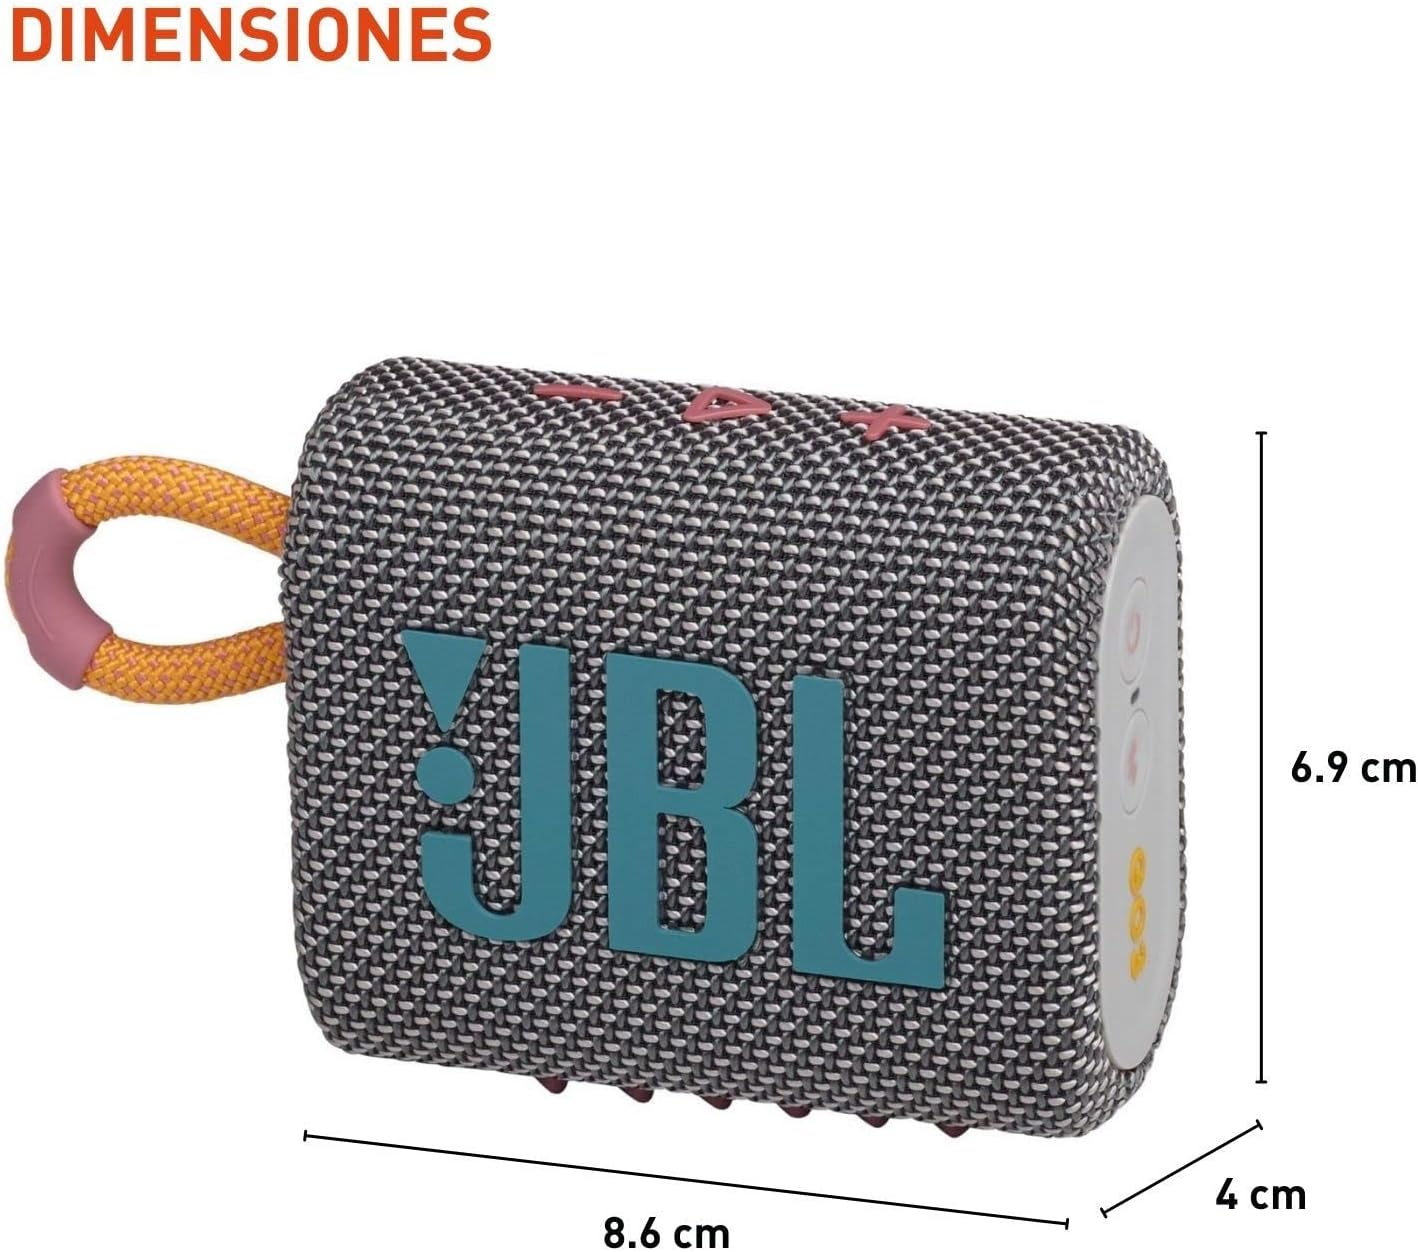 JBL Live 460NC - Auriculares inalámbricos con cancelación de ruido, batería  de larga duración y control de asistente por voz, color negro